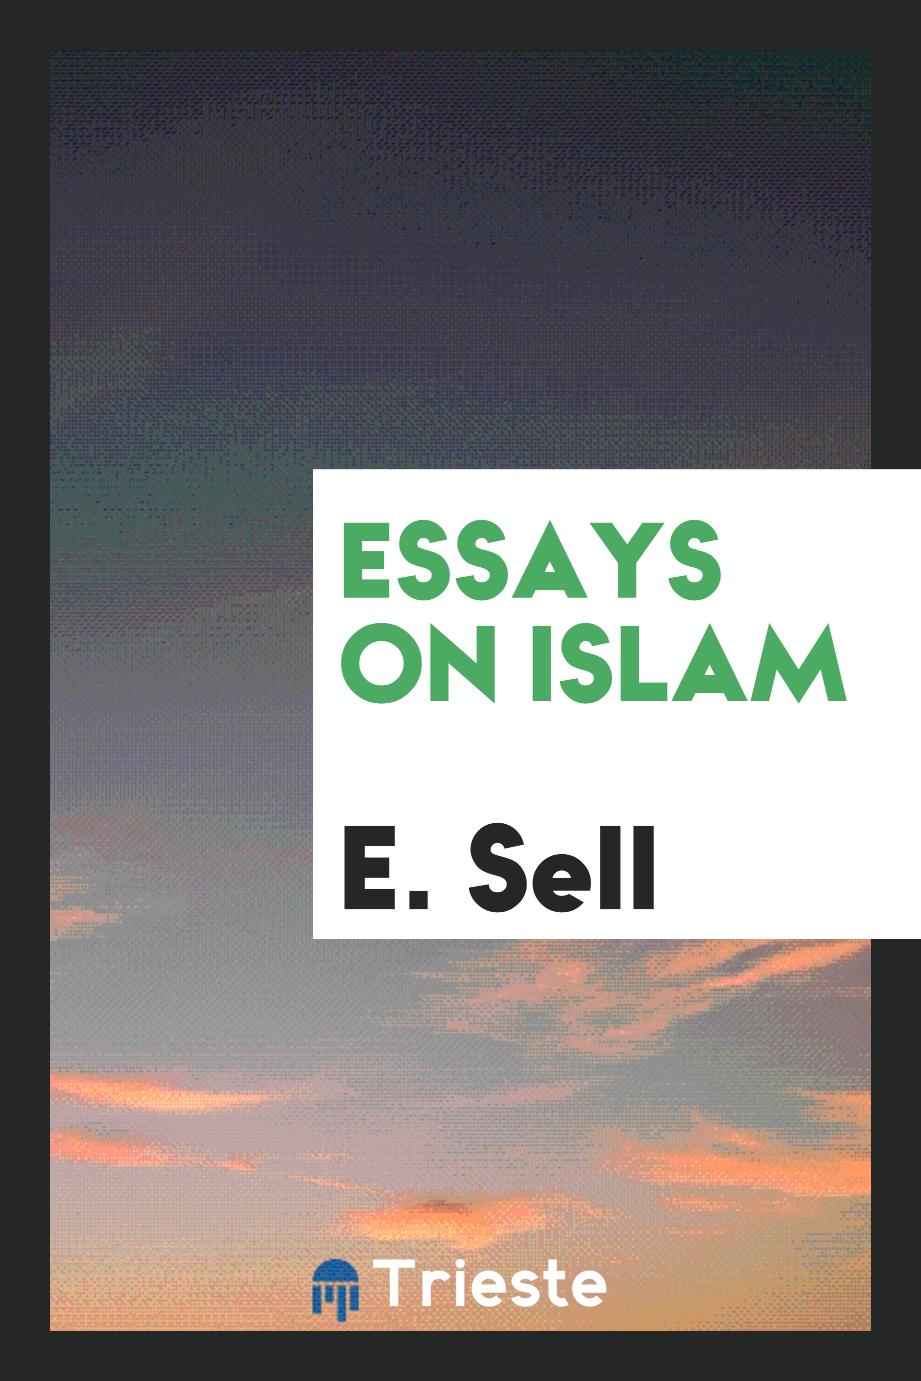 Essays on Islam